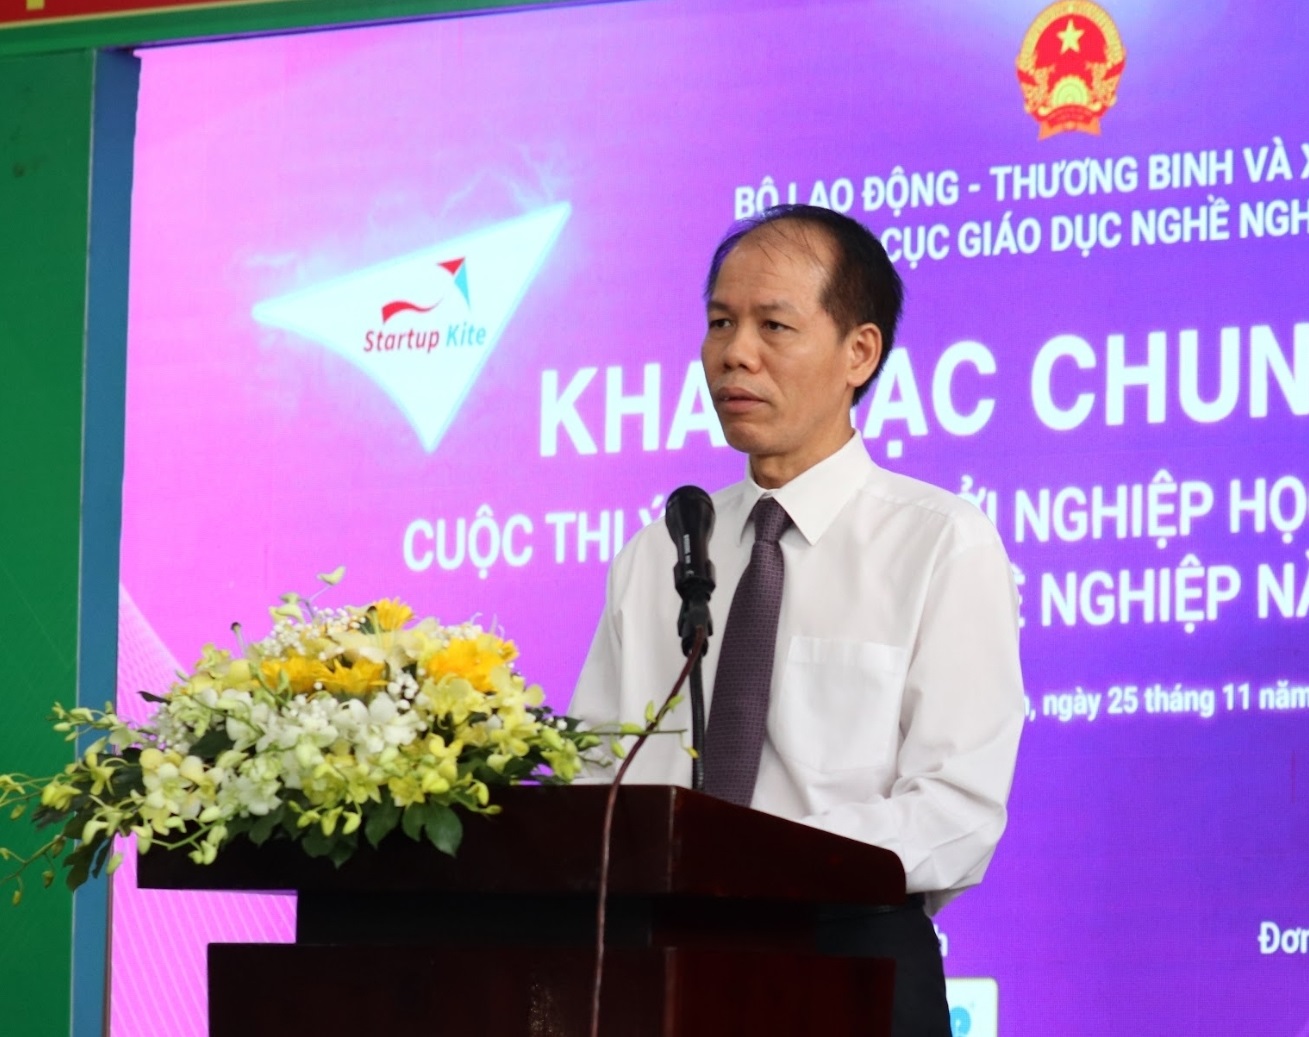 Ông Đỗ Năng Khánh, Phó Tổng cục trưởng Tổng cục Giáo dục nghề nghiệp khai mạc vòng chung kết cuộc thi Startup Kite. 